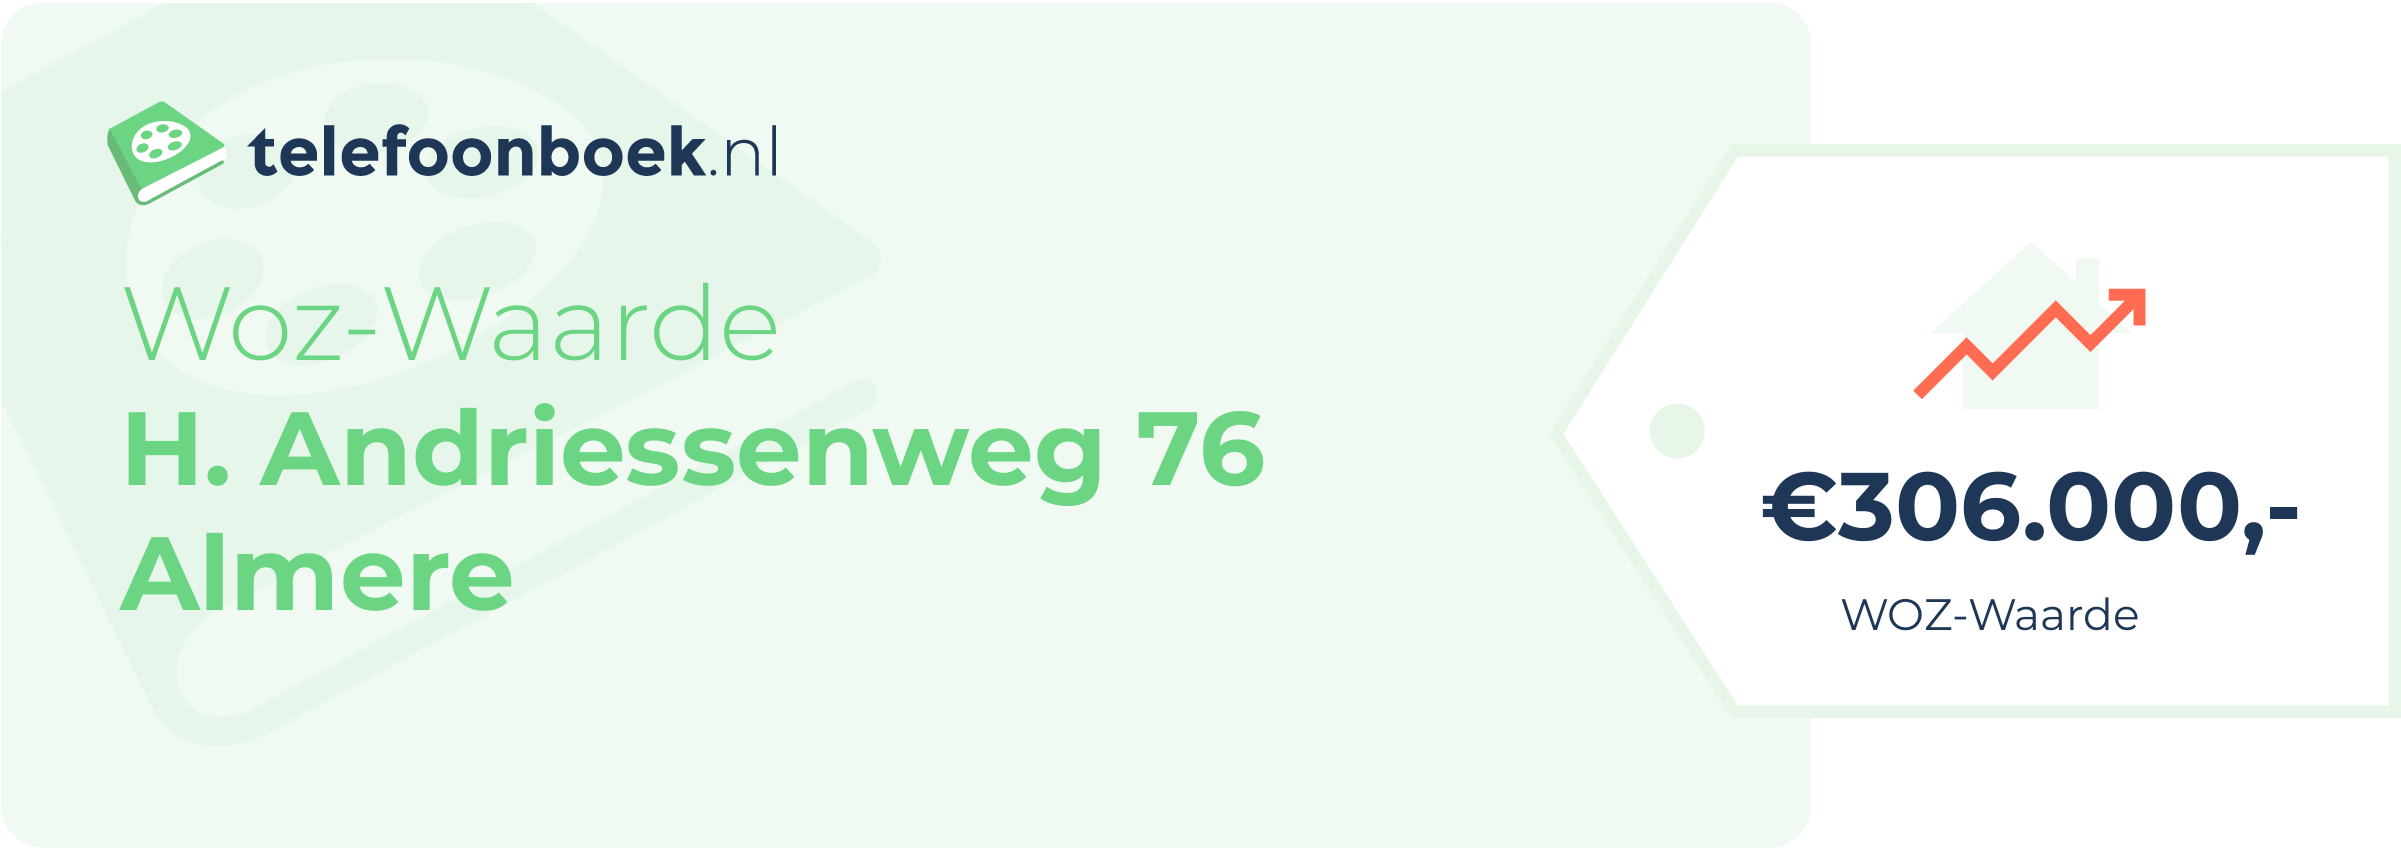 WOZ-waarde H. Andriessenweg 76 Almere